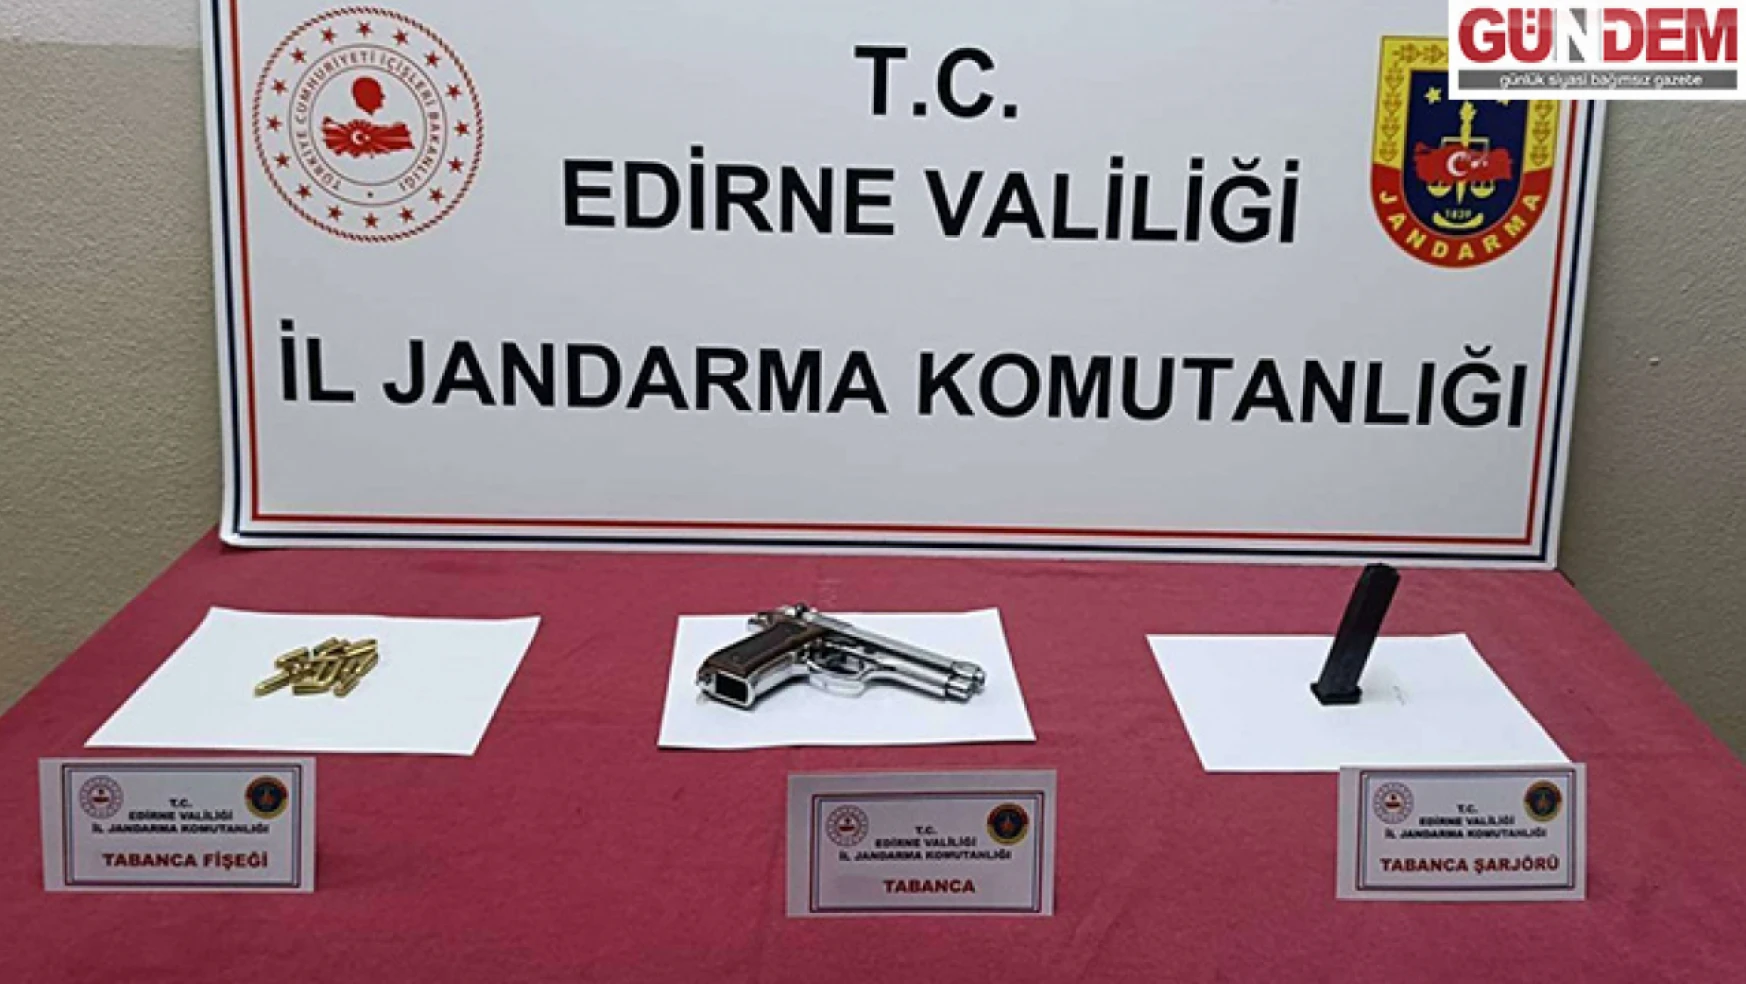 Edirne'de şüpheli şahsın üst aramasında ruhsatız tabanca ele geçirildi